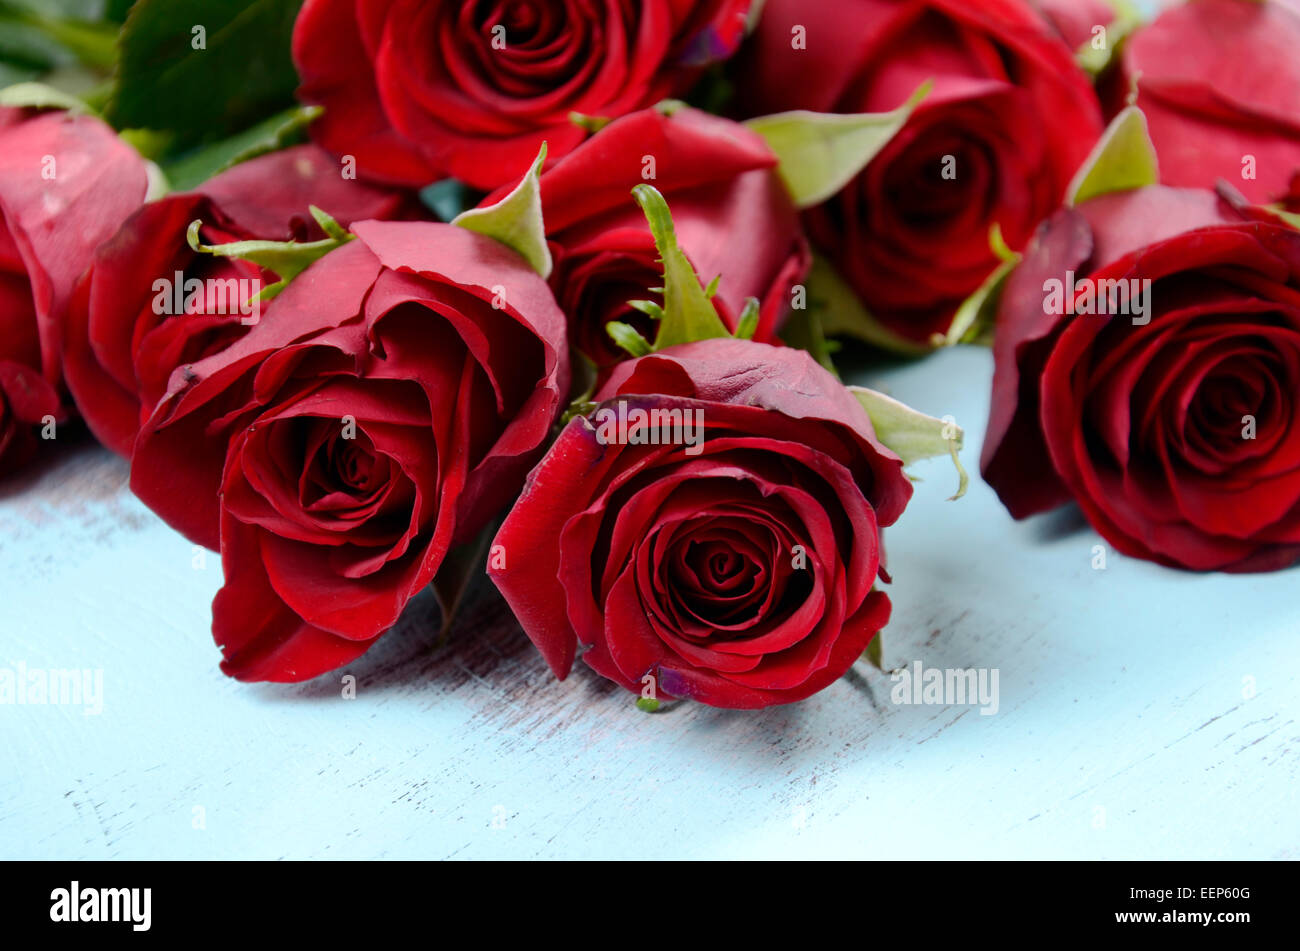 Vintage rote Rosen Geschenk für Valentinstag, Geburtstag oder besonderen Anlass auf blasse Aquablau recycelt notleidenden Holz Hintergrund, c Stockfoto